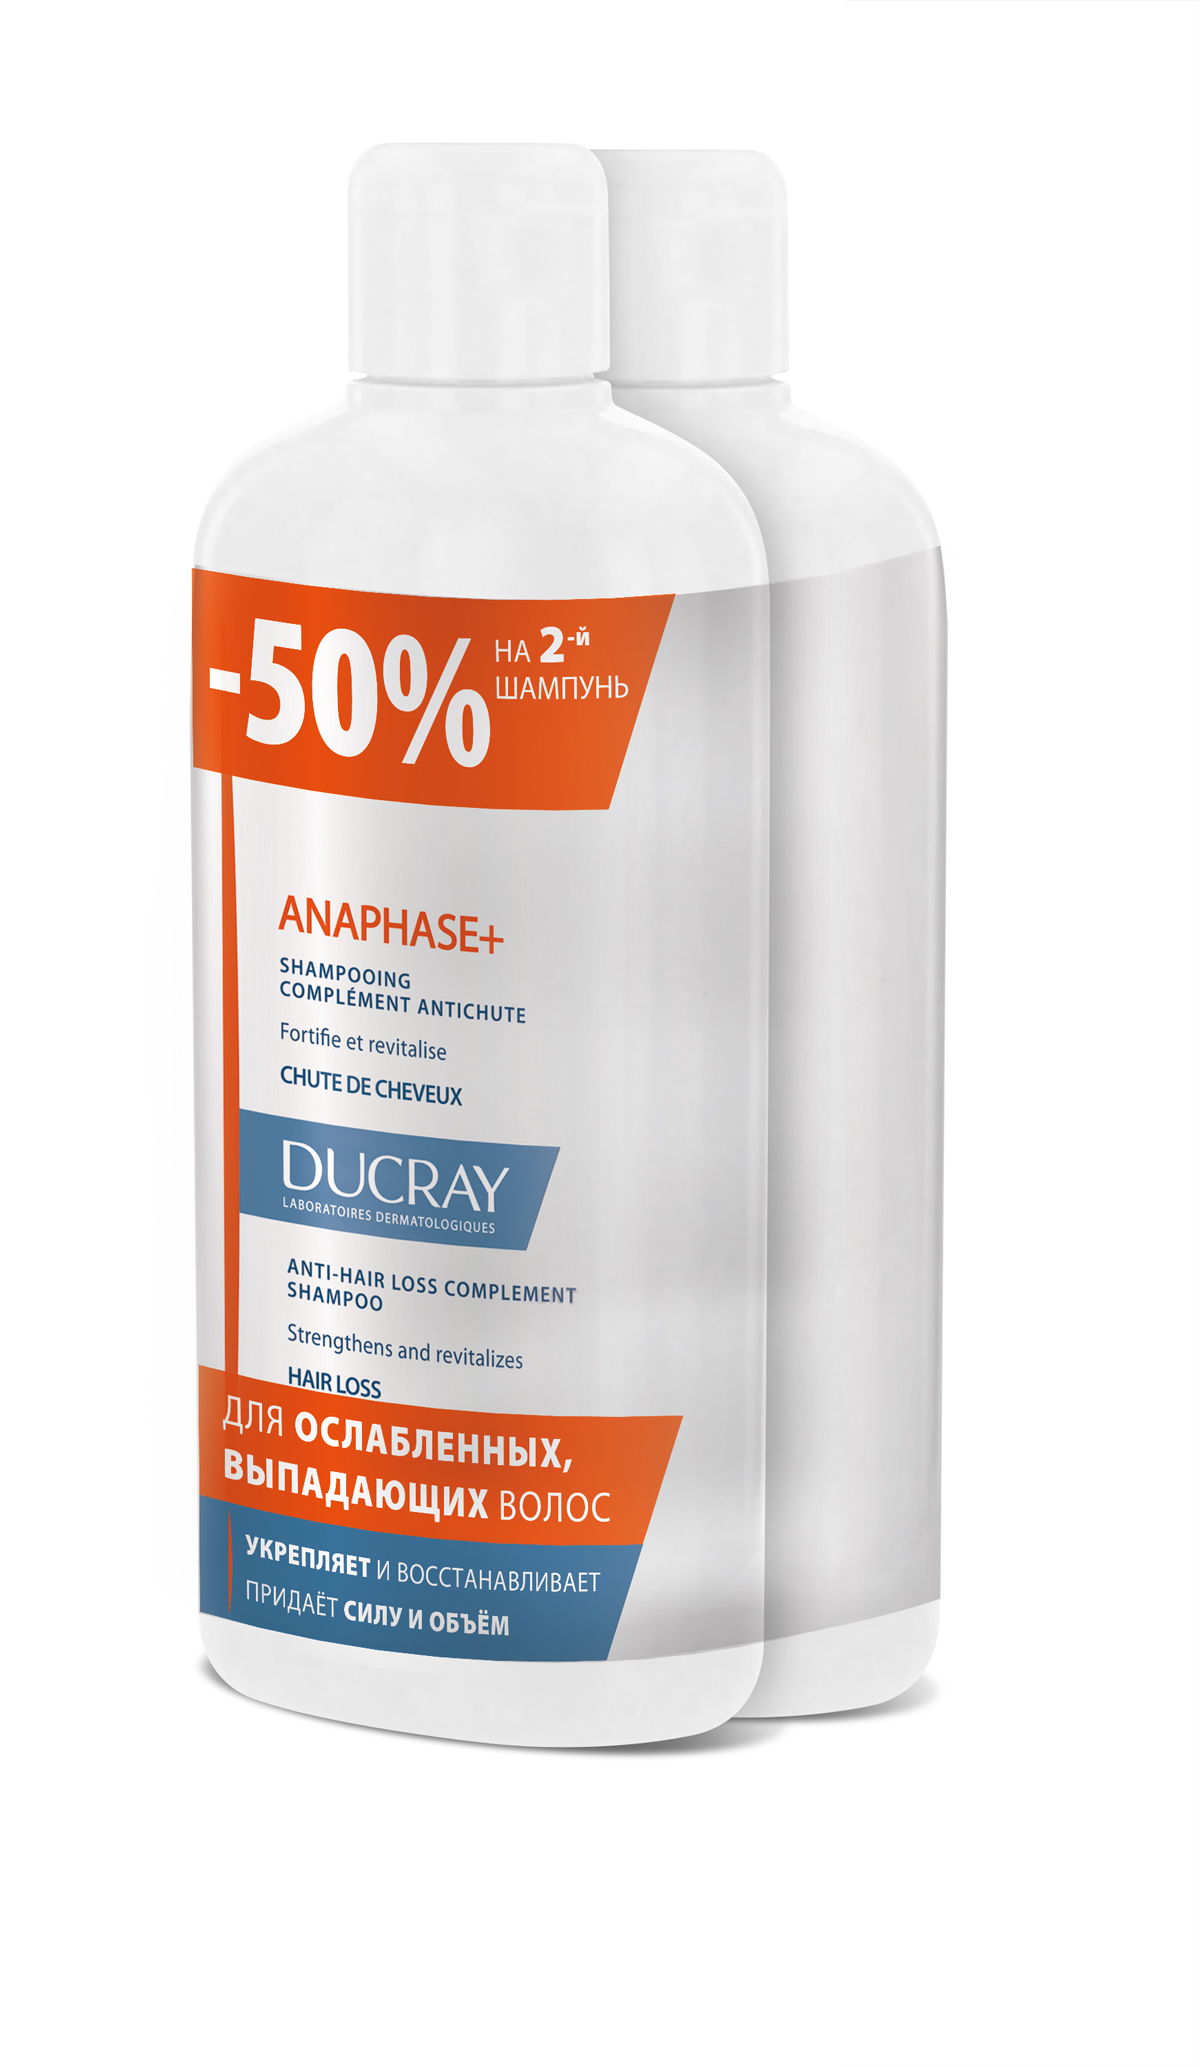 Ducray Набор Анафаз+ Шампунь для ослабленных, выпадающих волос 400 мл 2 шт скидка 50% на второй продукт крем для волос secret professionnel